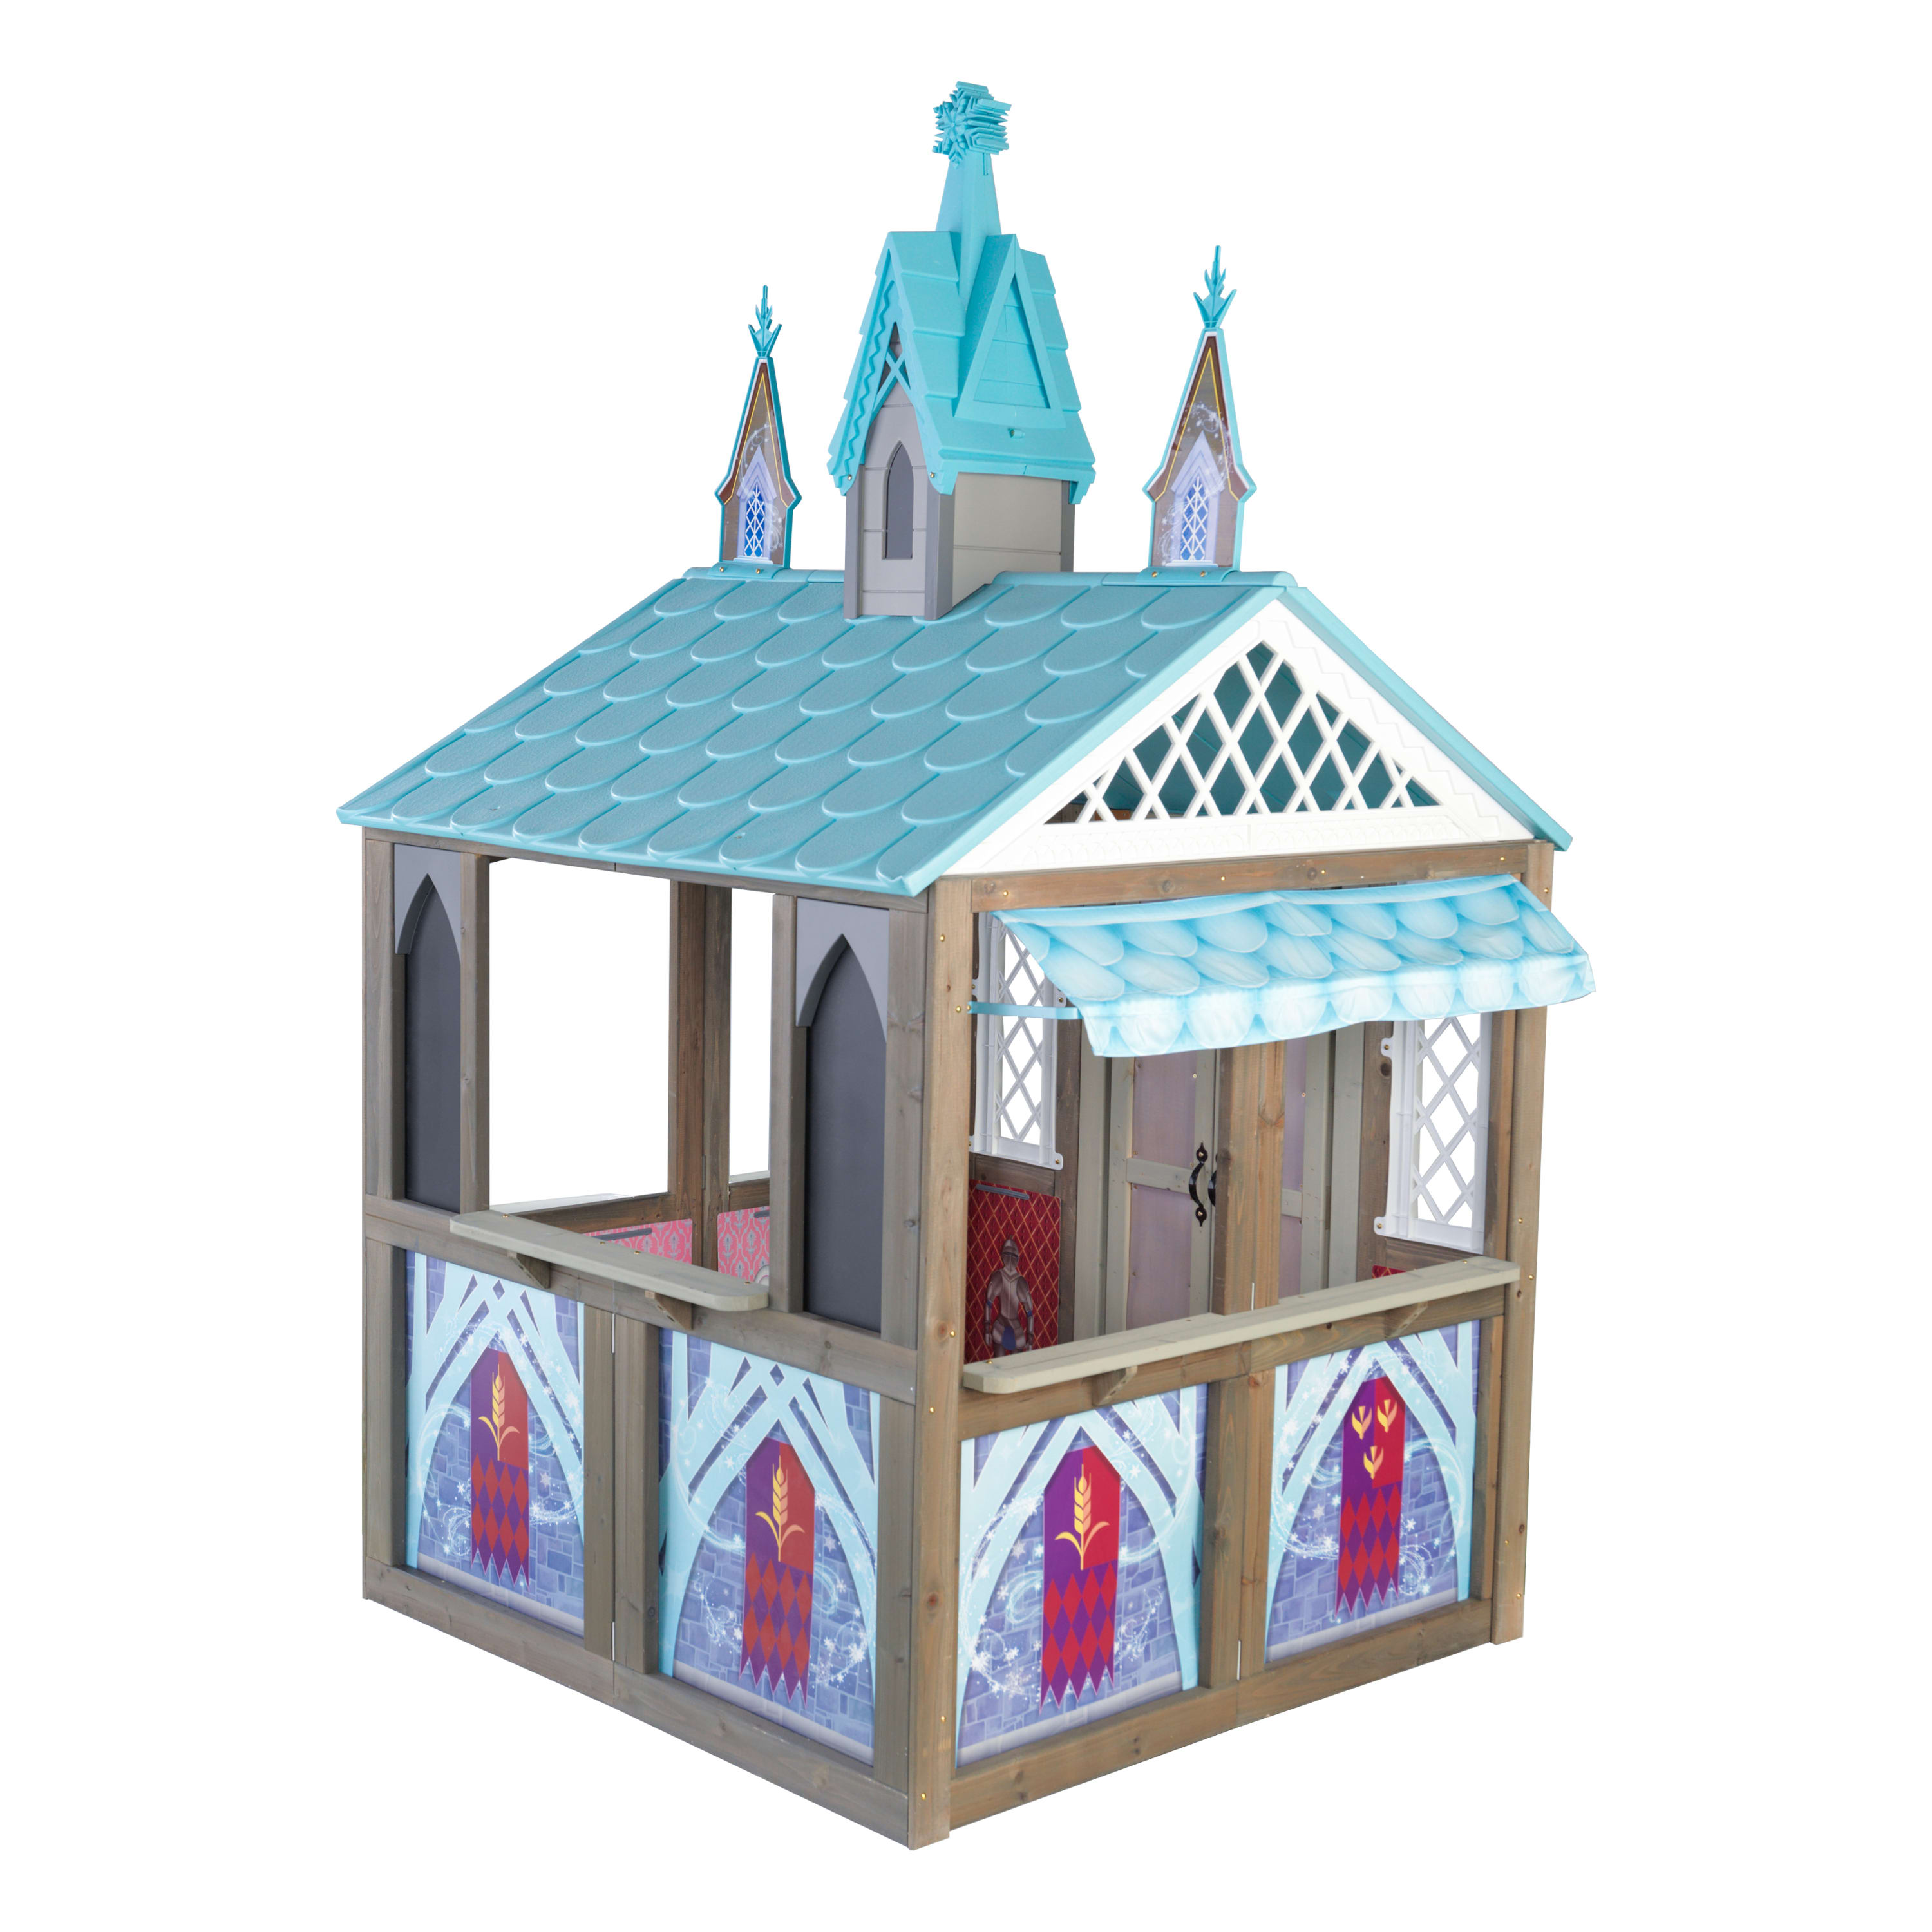 KidKraft Disney® Frozen Arendelle Wooden Outdoor Playhouse - image 1 of 11